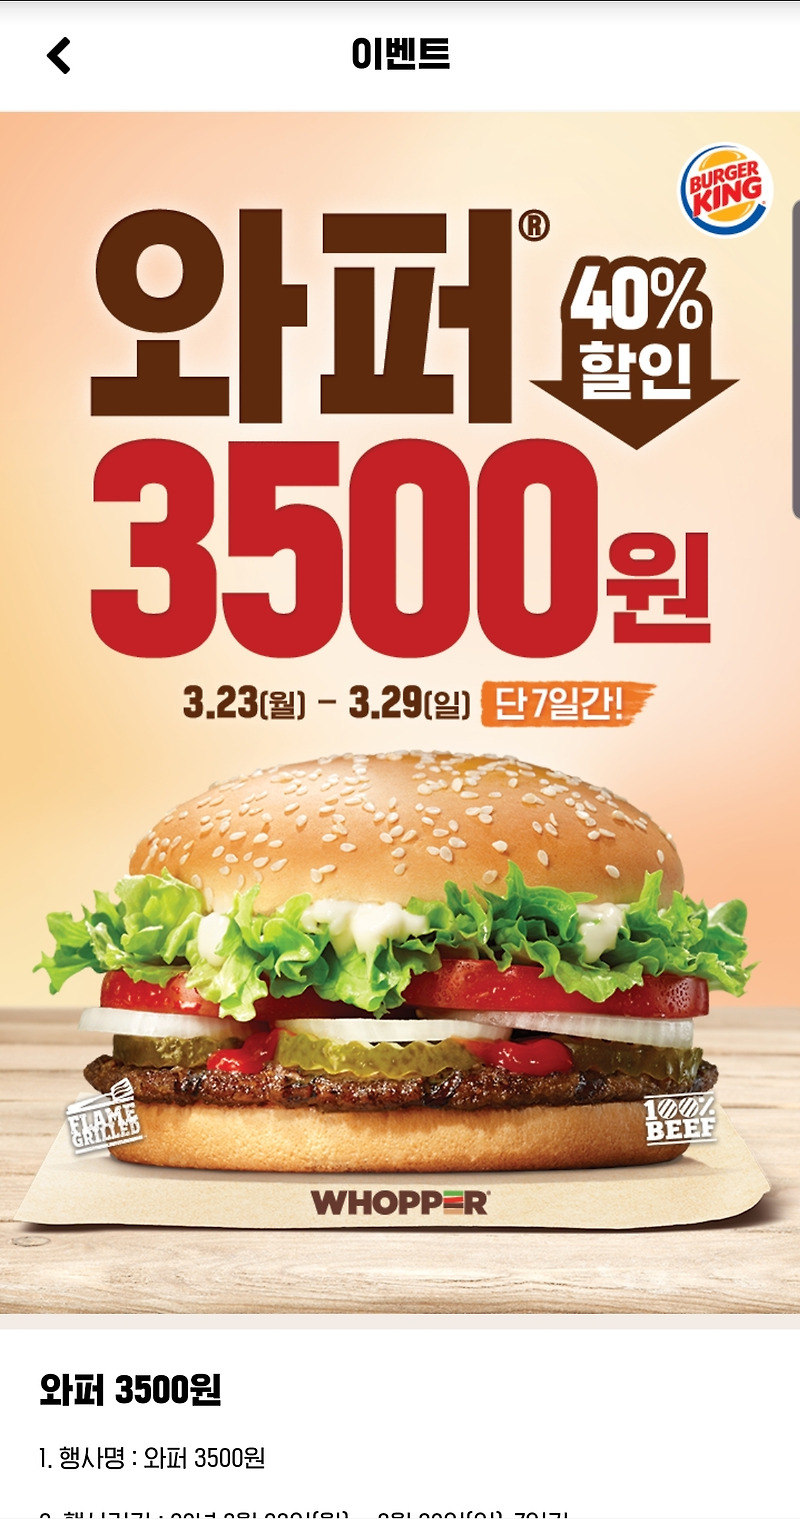 23일 버거킹 새소식 7일간 와퍼 단품 3500원 판매!